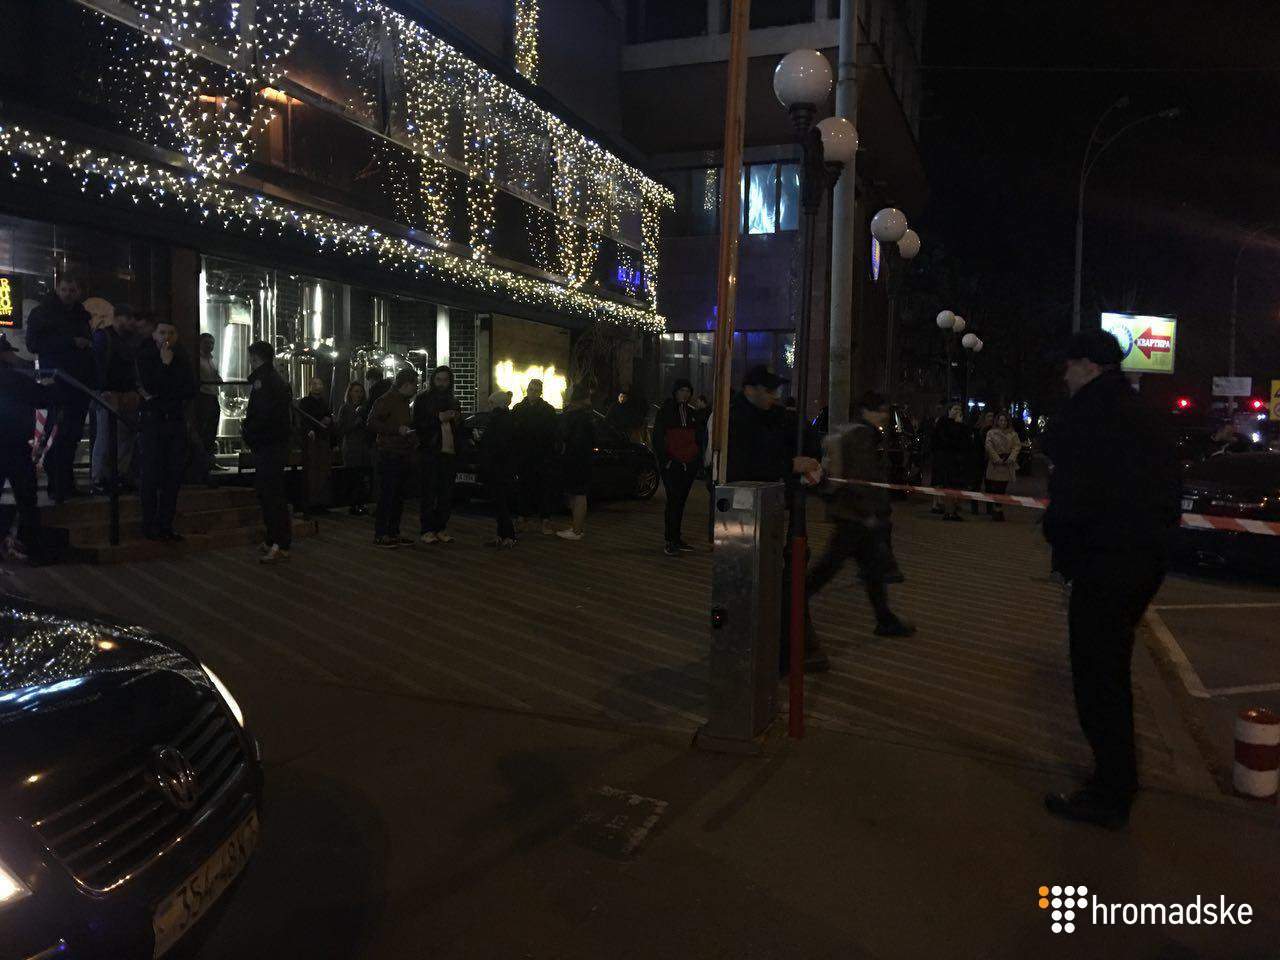 В центре Киева бытовая ссора переросла в стрельбу: ранен мужчина (фото)